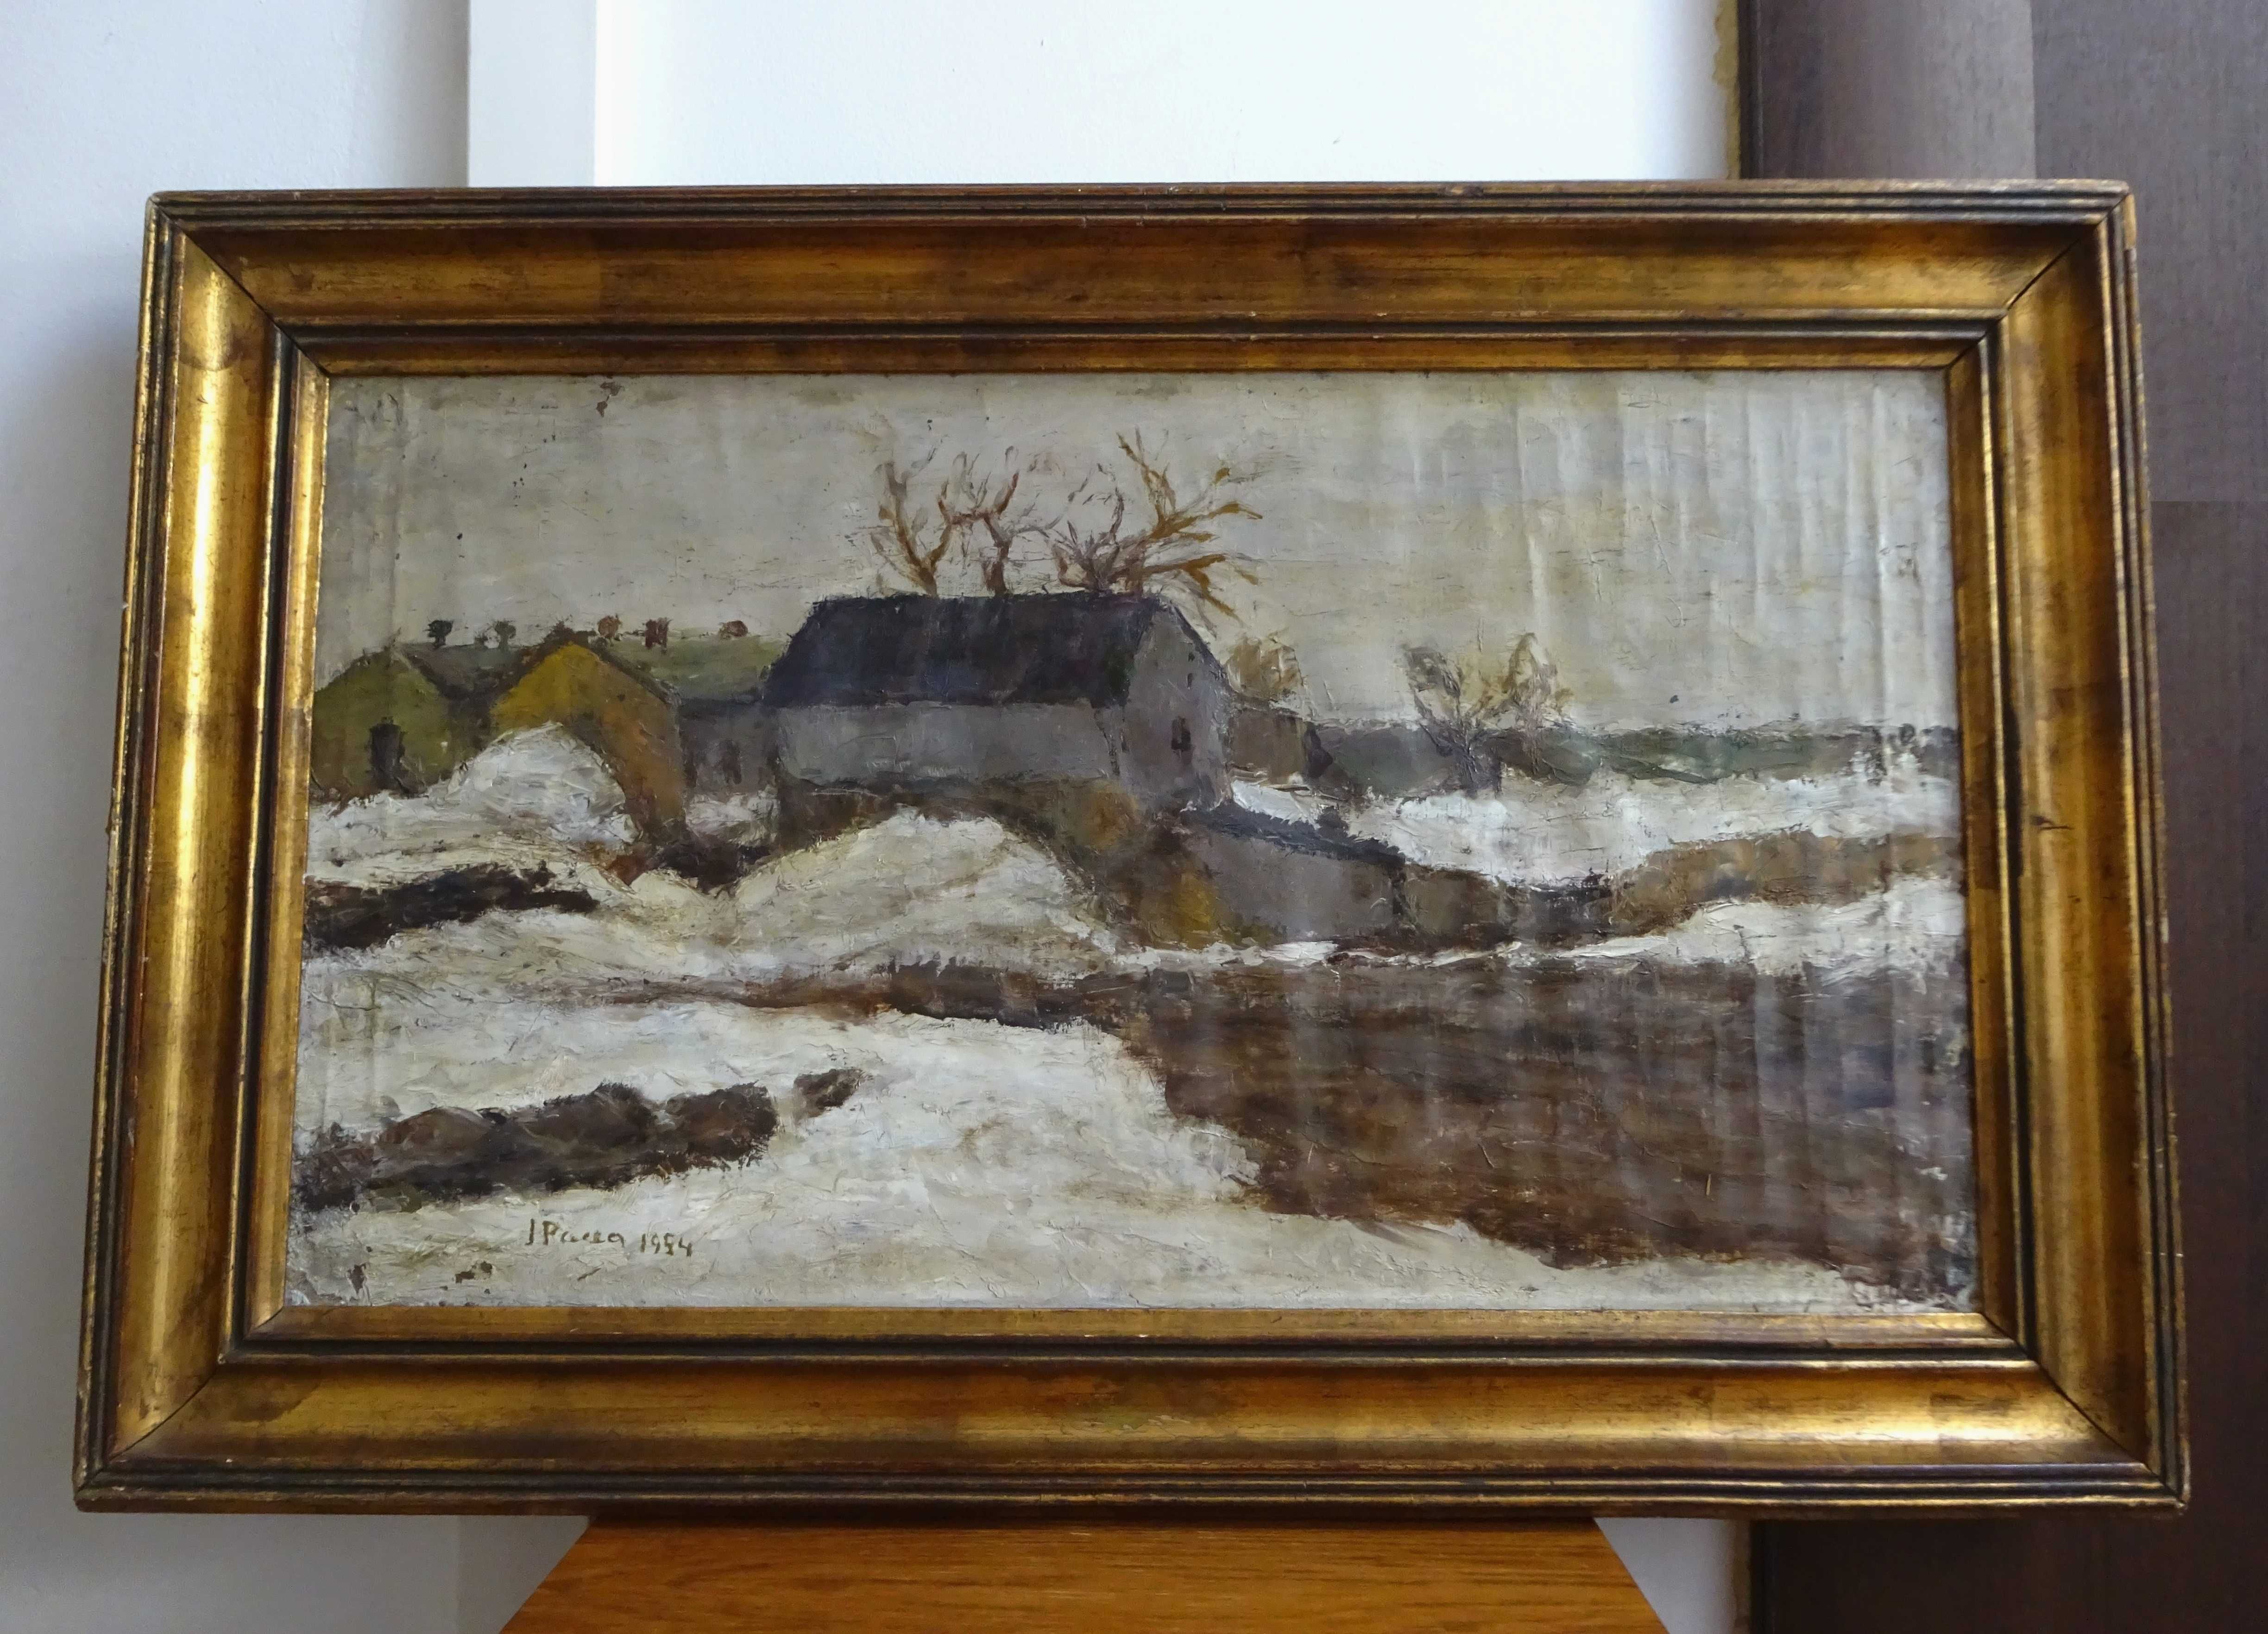 Tablou Ion PACEA, ’Peisaj de iarna’ - Pictura pe panza deosebita